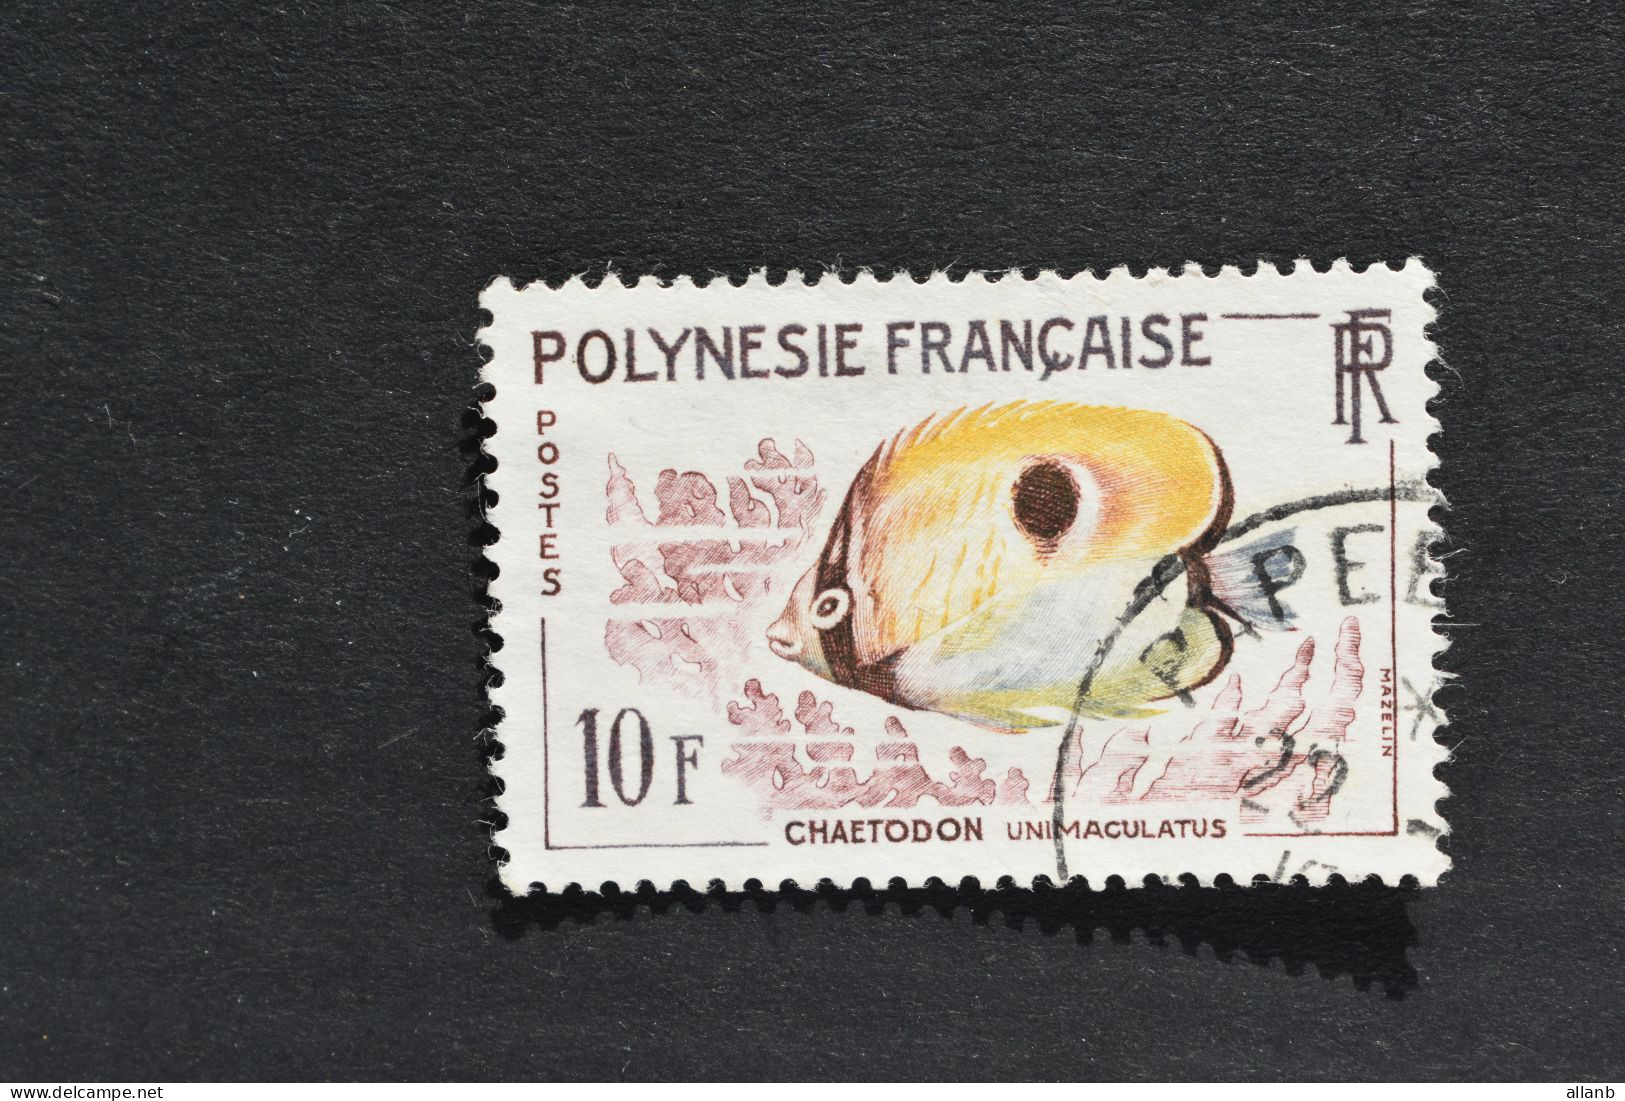 Polynésie Française - 1962 Poissons Chaetodon Unimaculatus N° 19 Oblitéré - Used Stamps